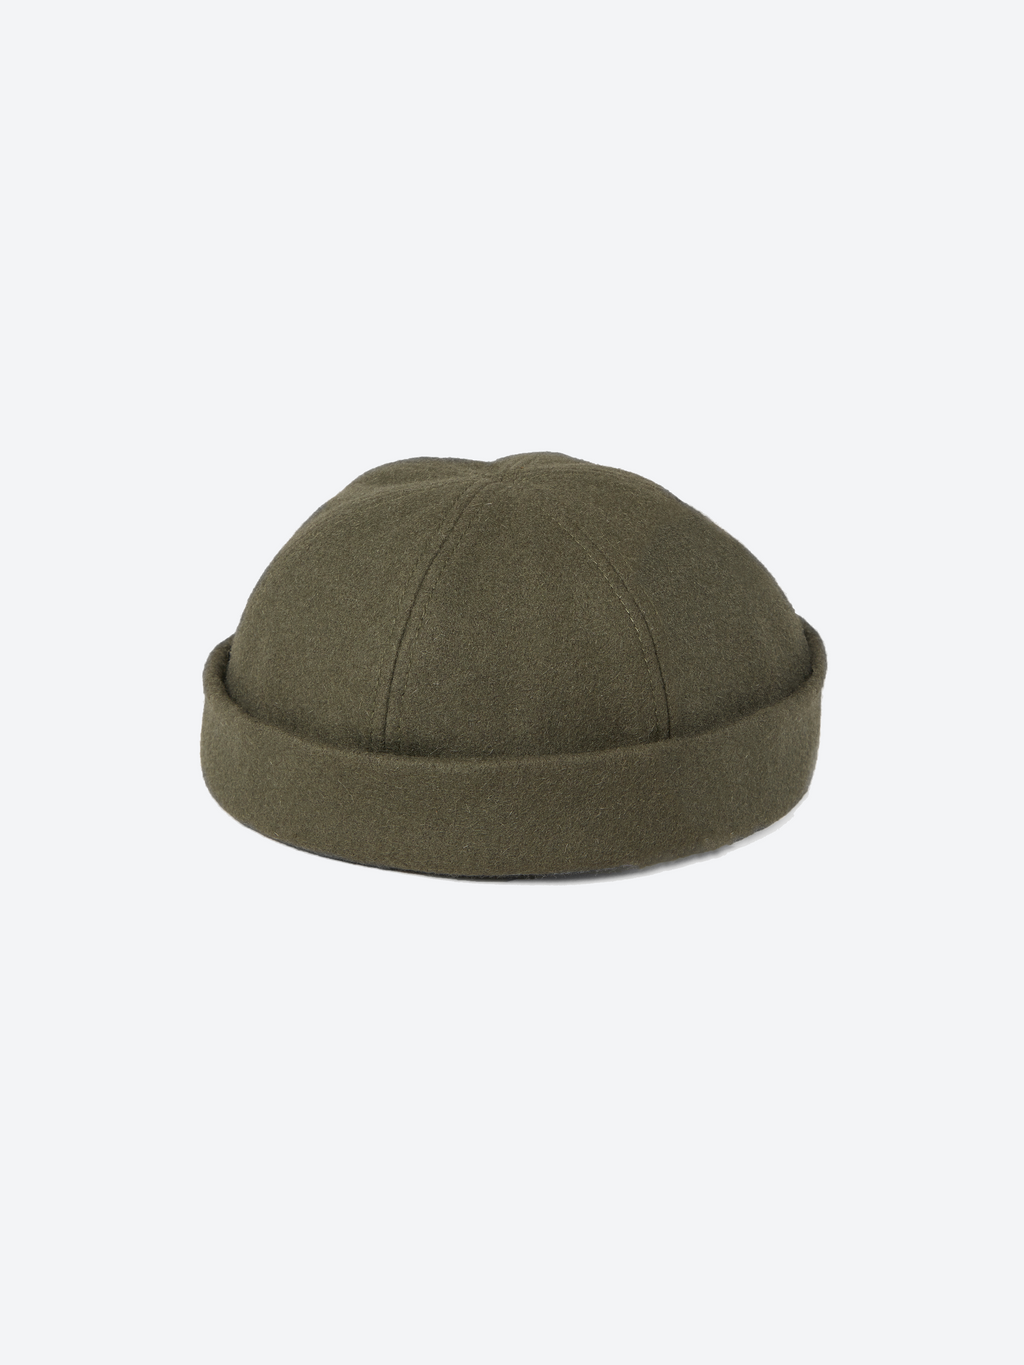 Wool Docker Cap - Olive